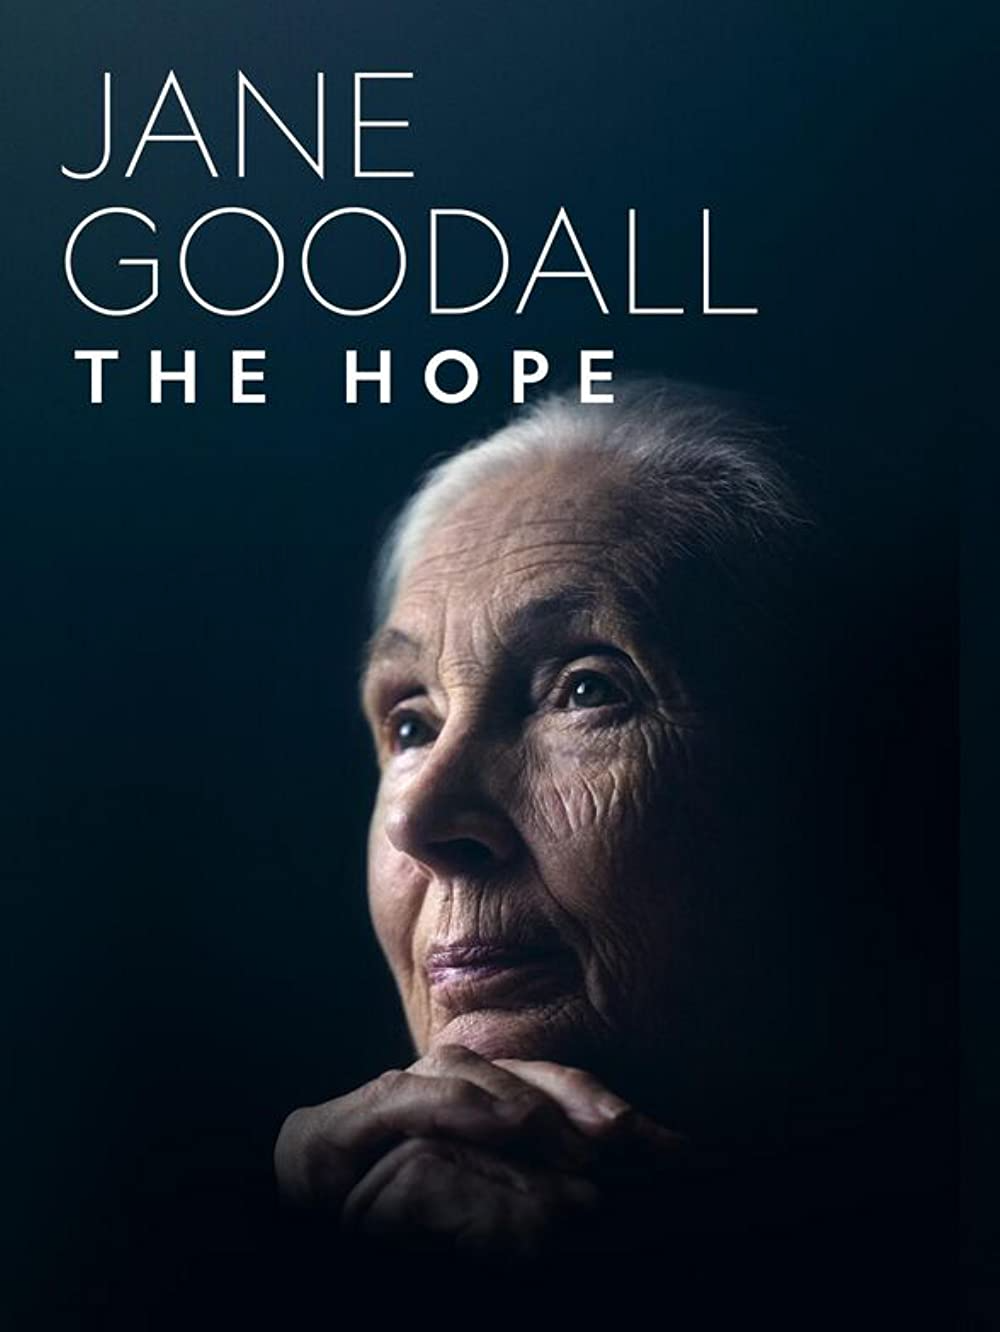 Best Documentaries On Disney Plus: Jane Goodall The Hope